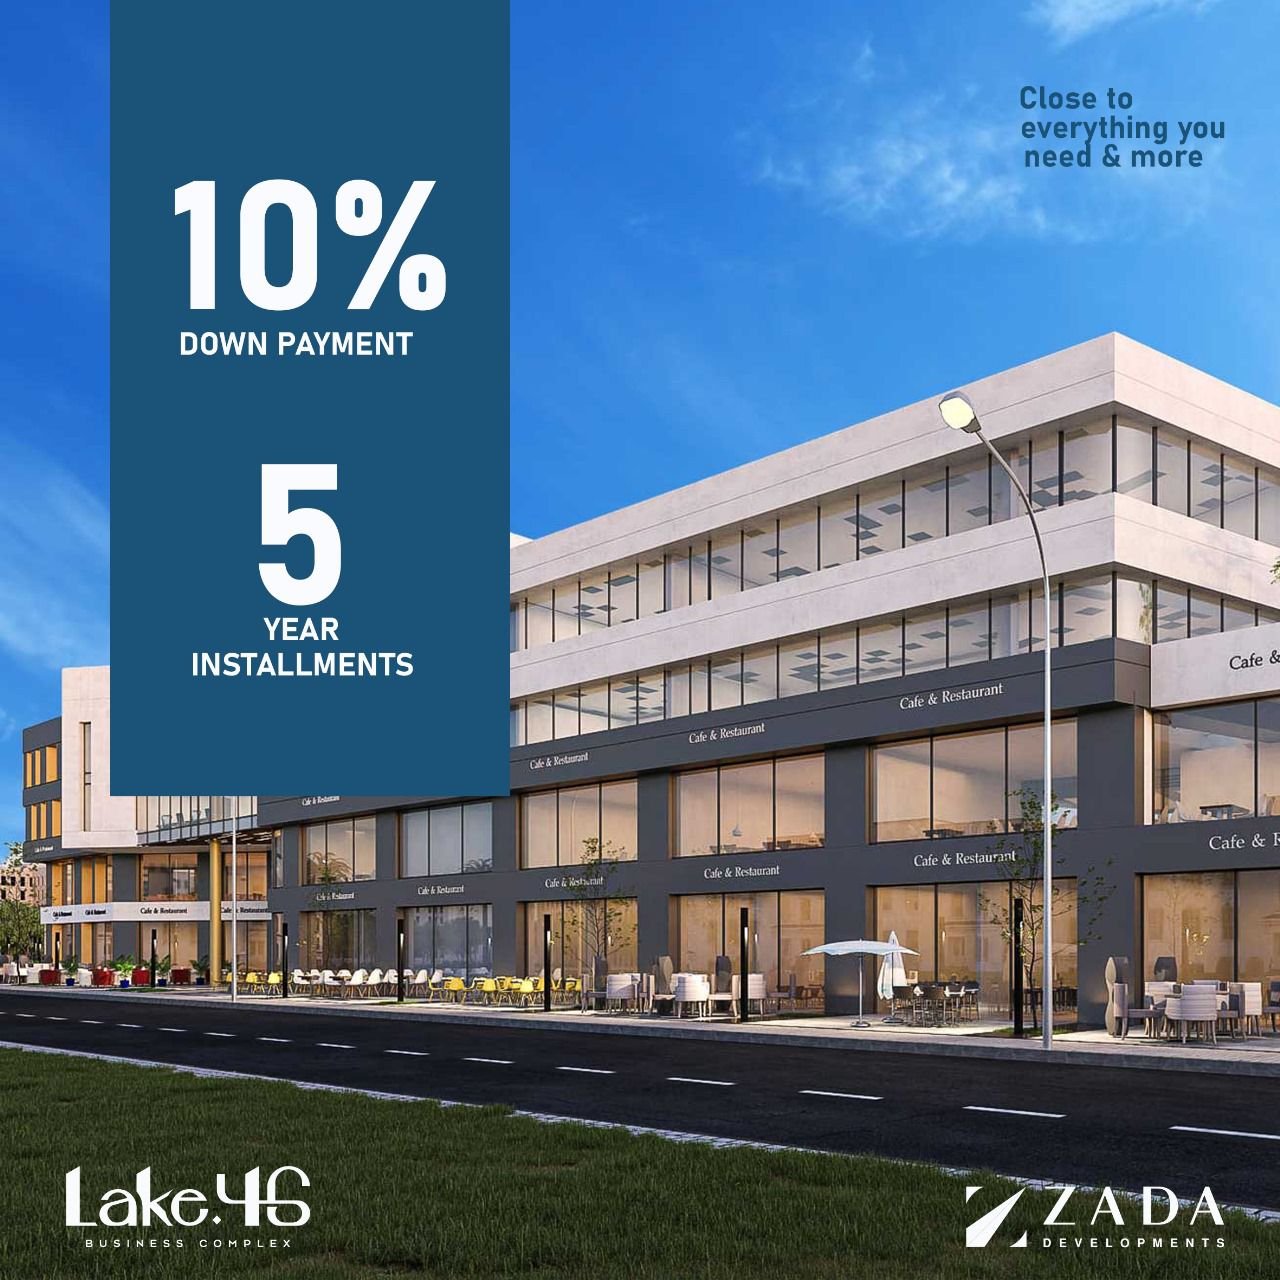 عيادة للبيع بالتقسيط في مدينة 6 أكتوبر مساحة 60 متر بمقدم 25% وتقسيط يصل الي 5 سنوات في مول LAKE 46 Mall | THE PEAK PROPERTIES